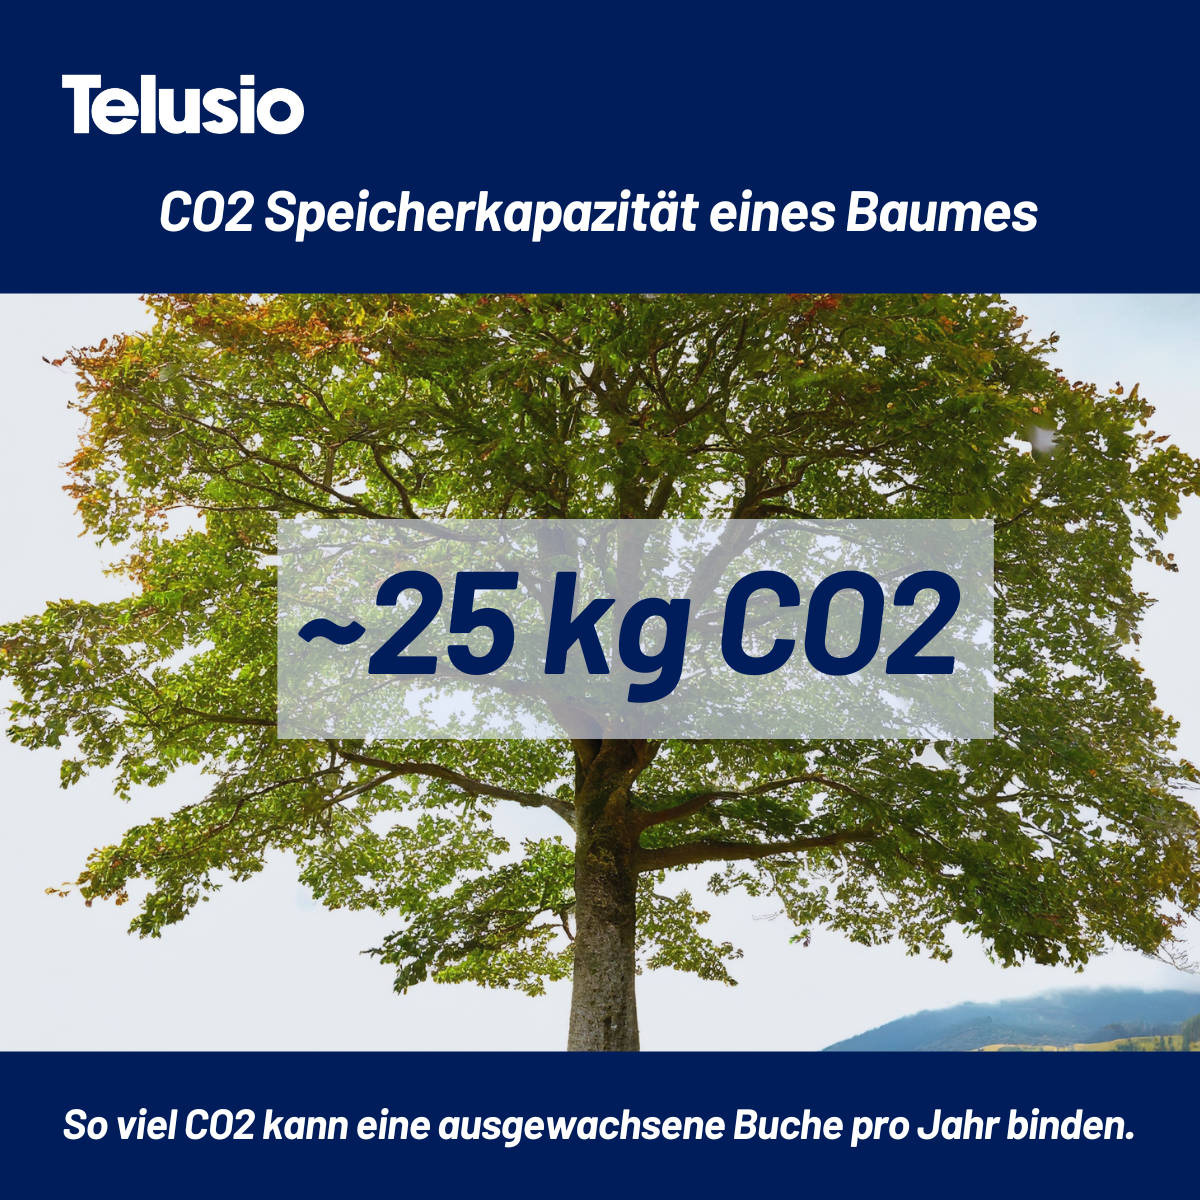 Moodbild für die CO2 Speicherkapazität eines Baumes